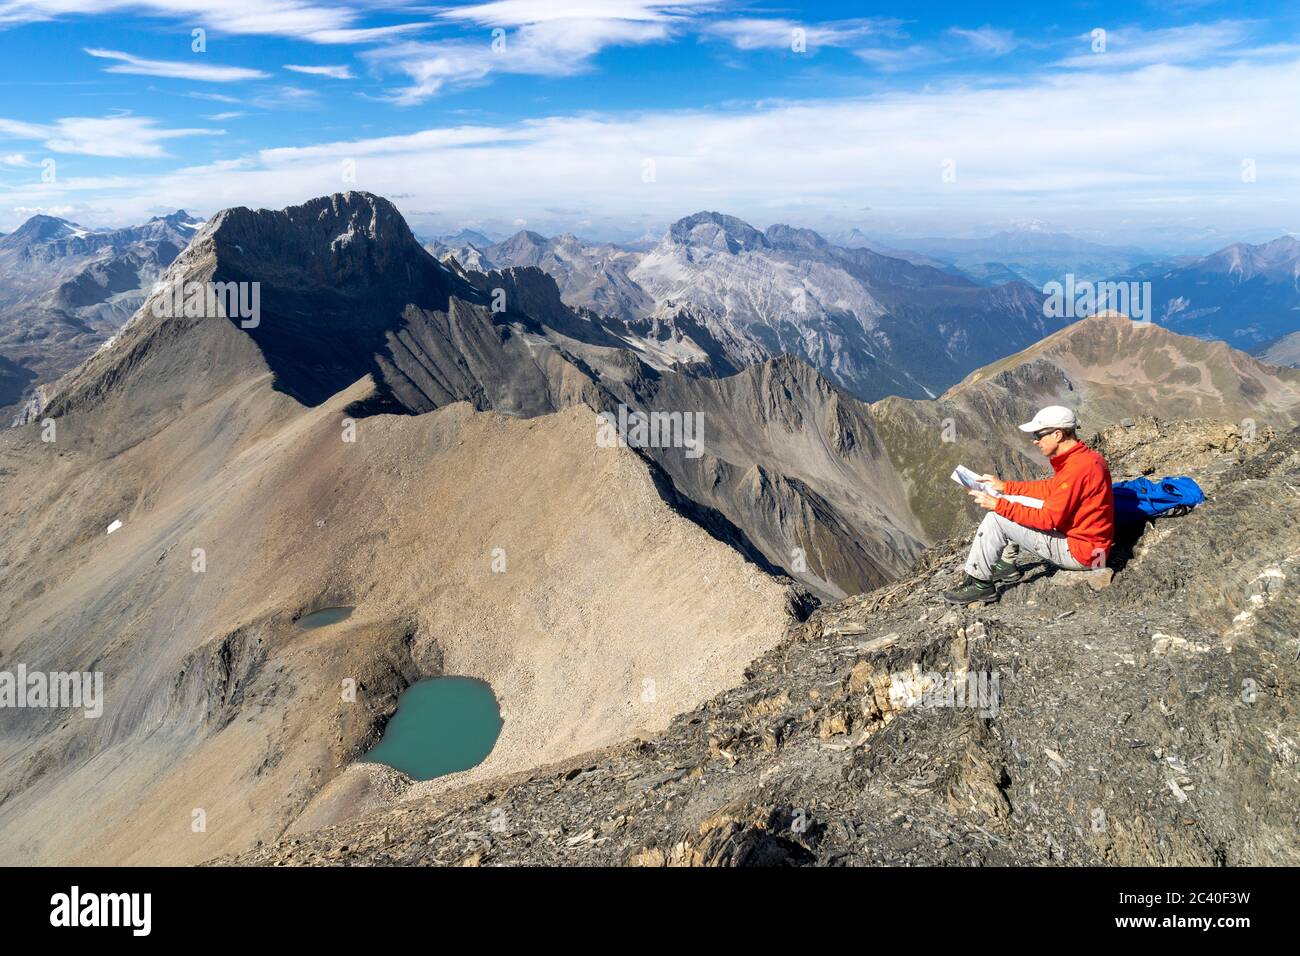 Der Piz Üertsch (Gipfel aus Dolomit-Gestein) und der Piz Ela (Bildmitte hinten, ebenFalls Dolomit). Sicht vom Piz Blaisun (Kalk). Namenlose visto. Albu Foto Stock